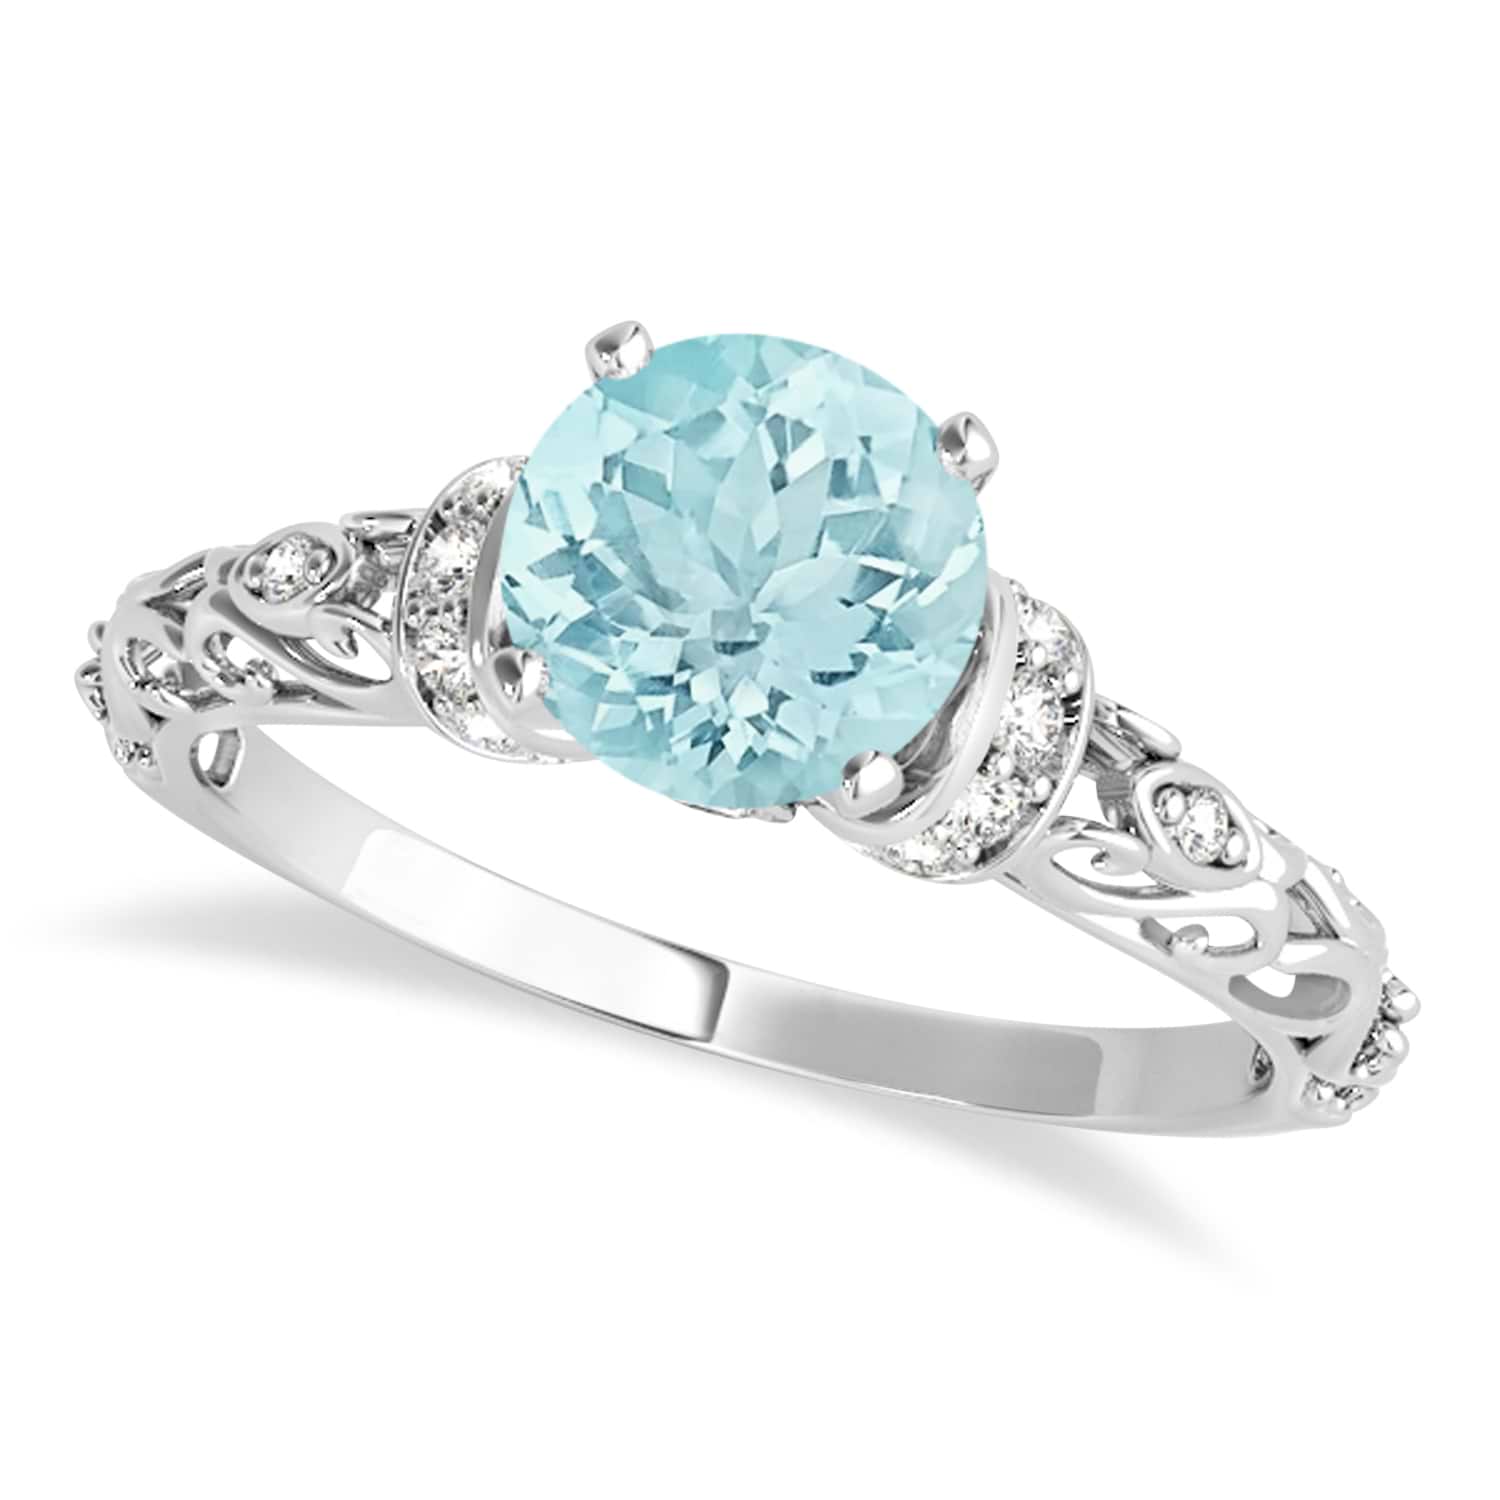 Aquamarine & Diamond Antique Style Engagement Ring Platinum (1.62ct)